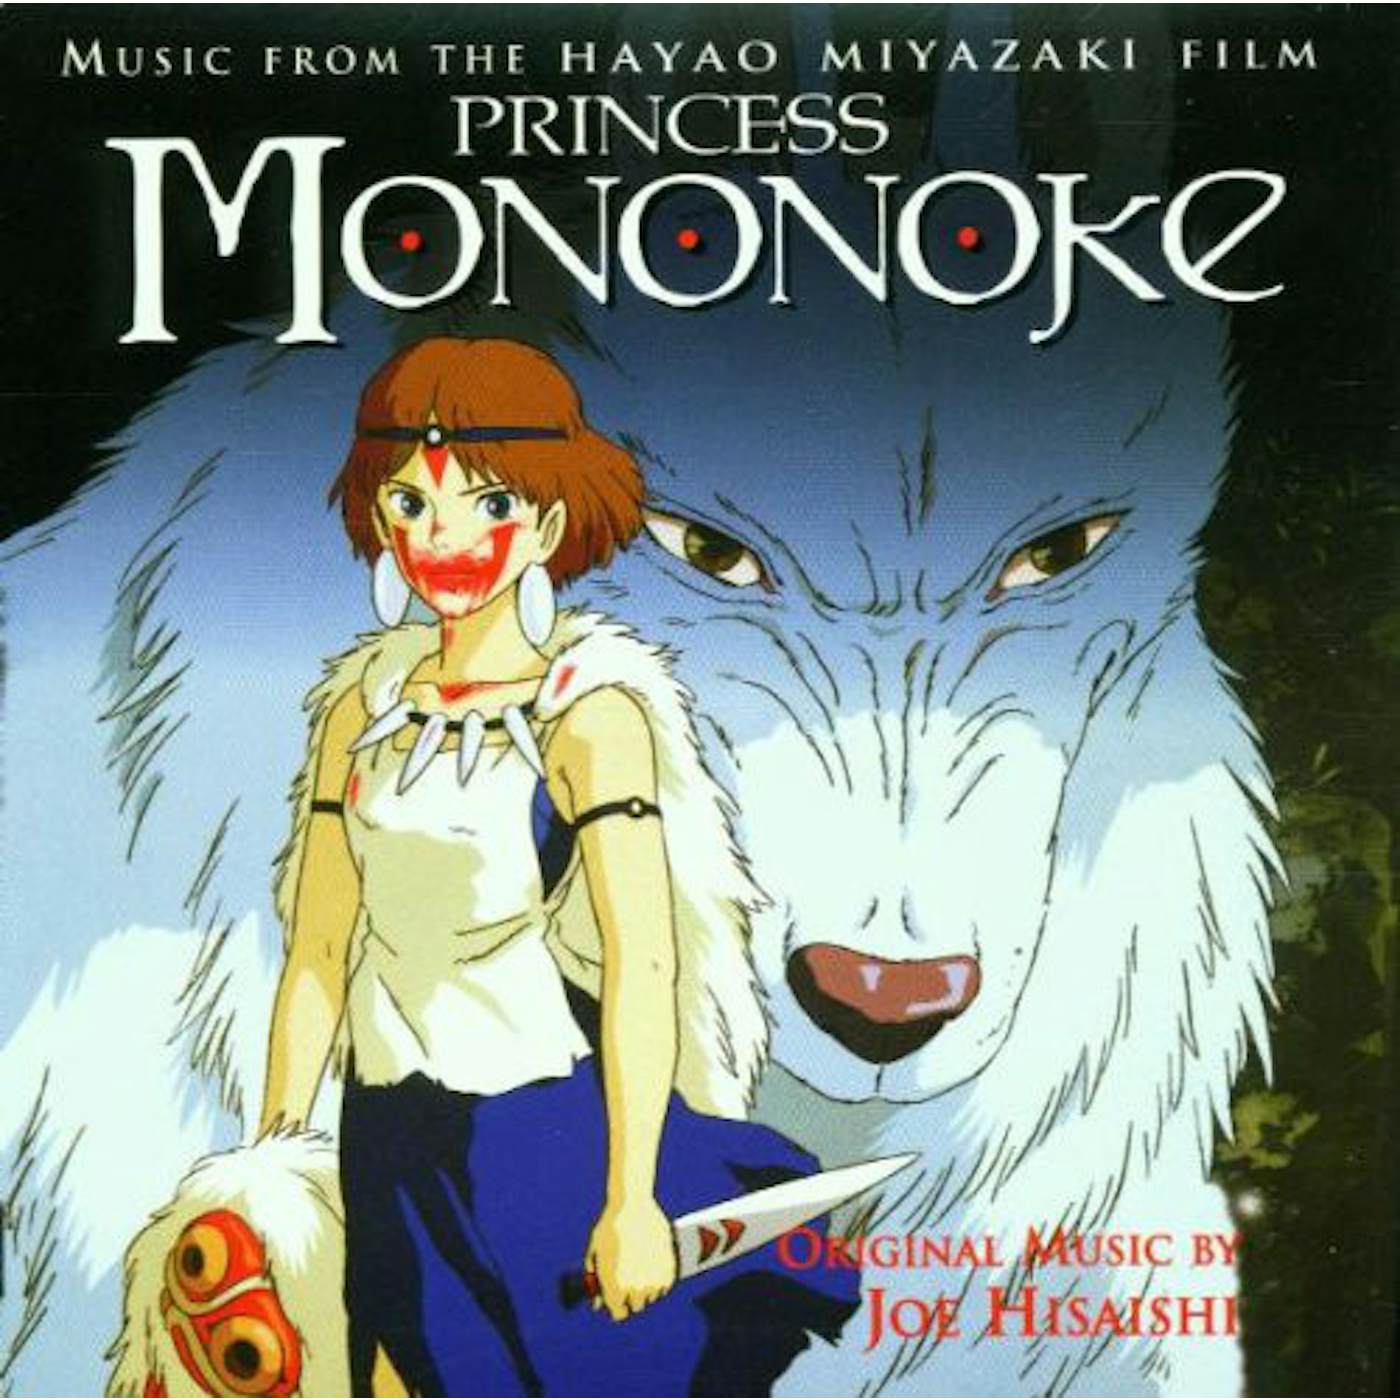 Princess Mononoke / O.S.T. PRINCESS MONONOKE (IMAGE ALBUM) / Original Soundtrack Vinyl Record